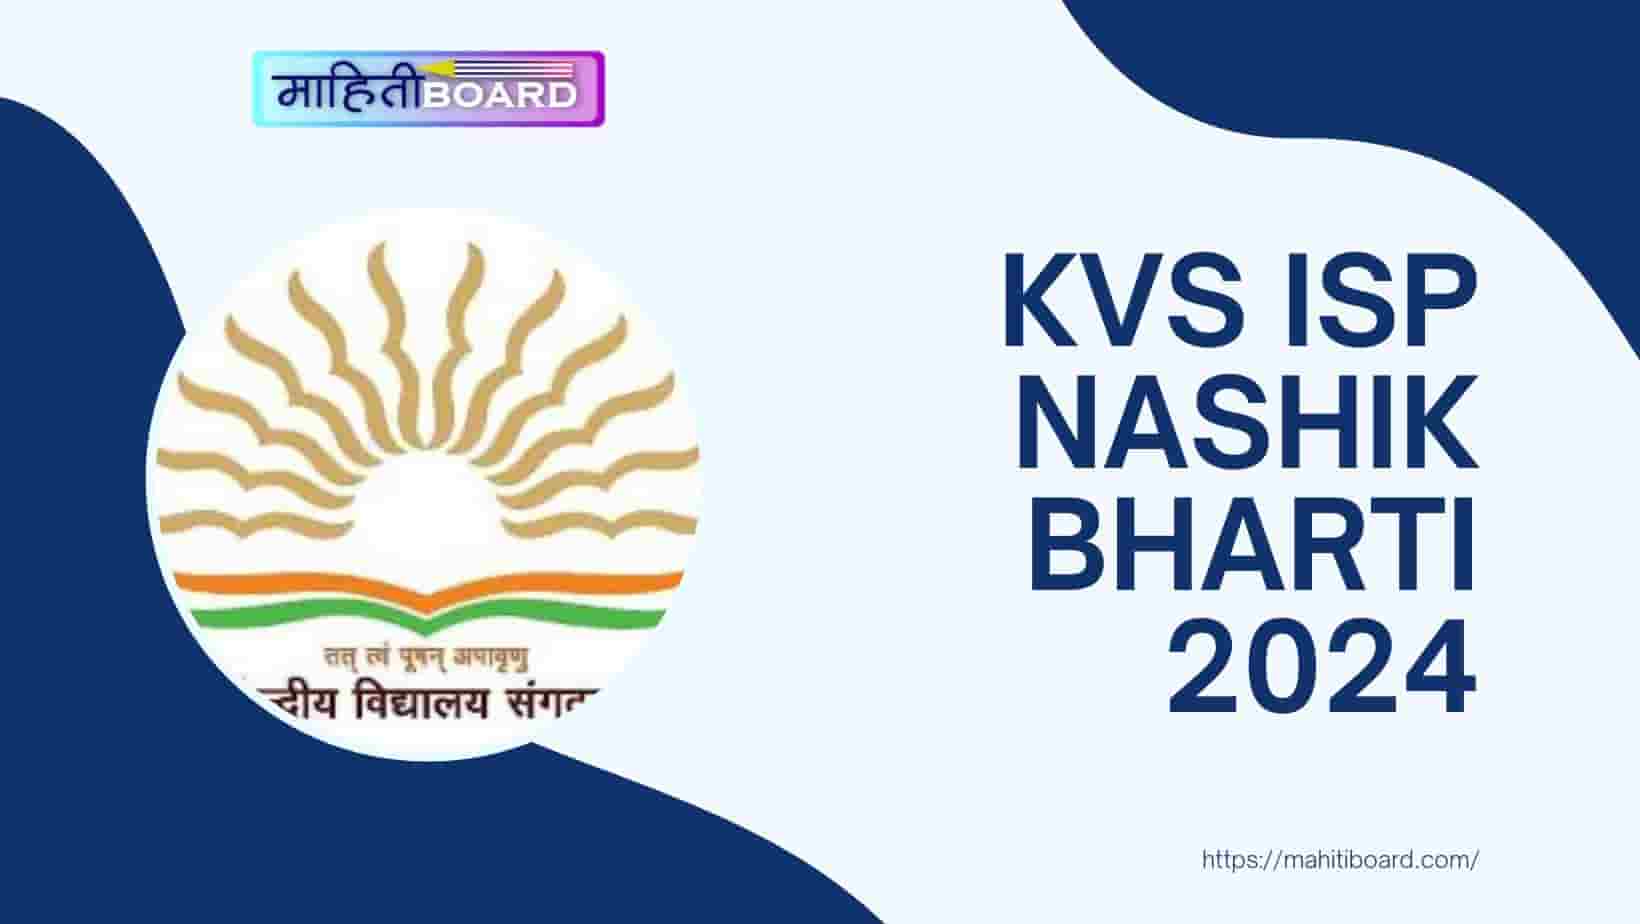 KVS ISP Nashik Bharti 2024